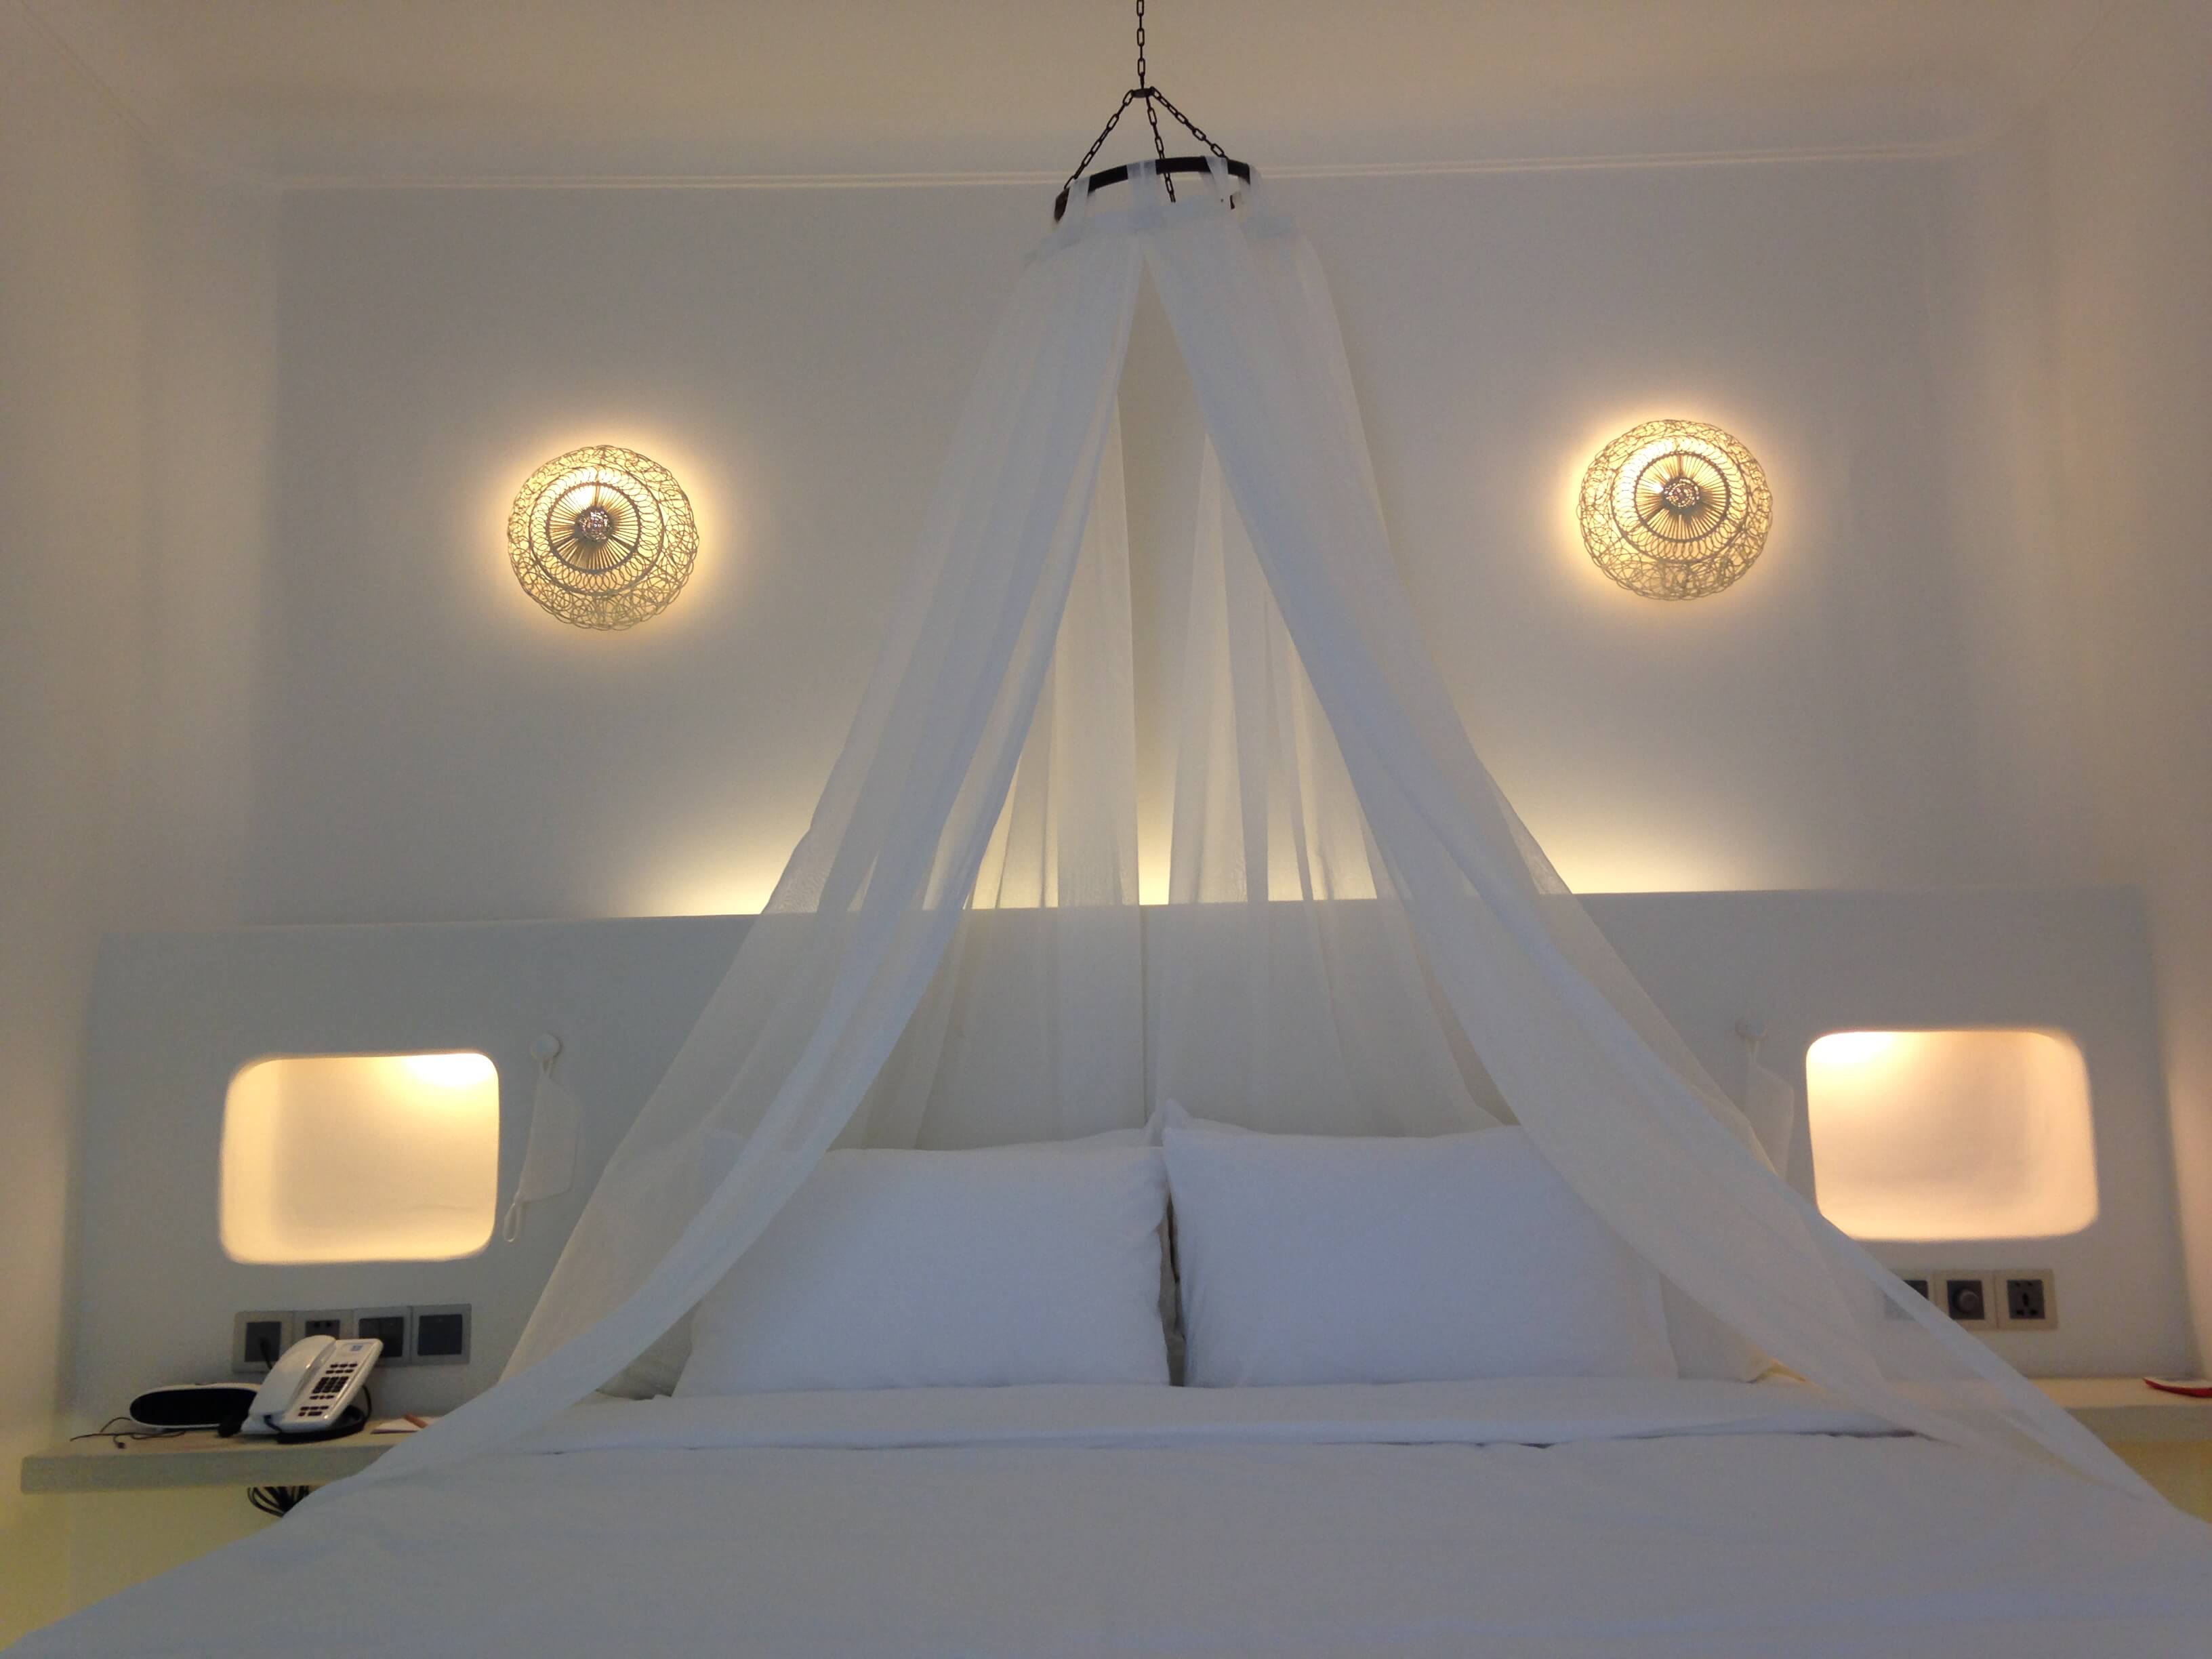 Đèn áp tường rổ mây trắng của Đèn Xinh trong dự án Alma LongHai giúp tiết kiệm diện tích cho phòng ngủ